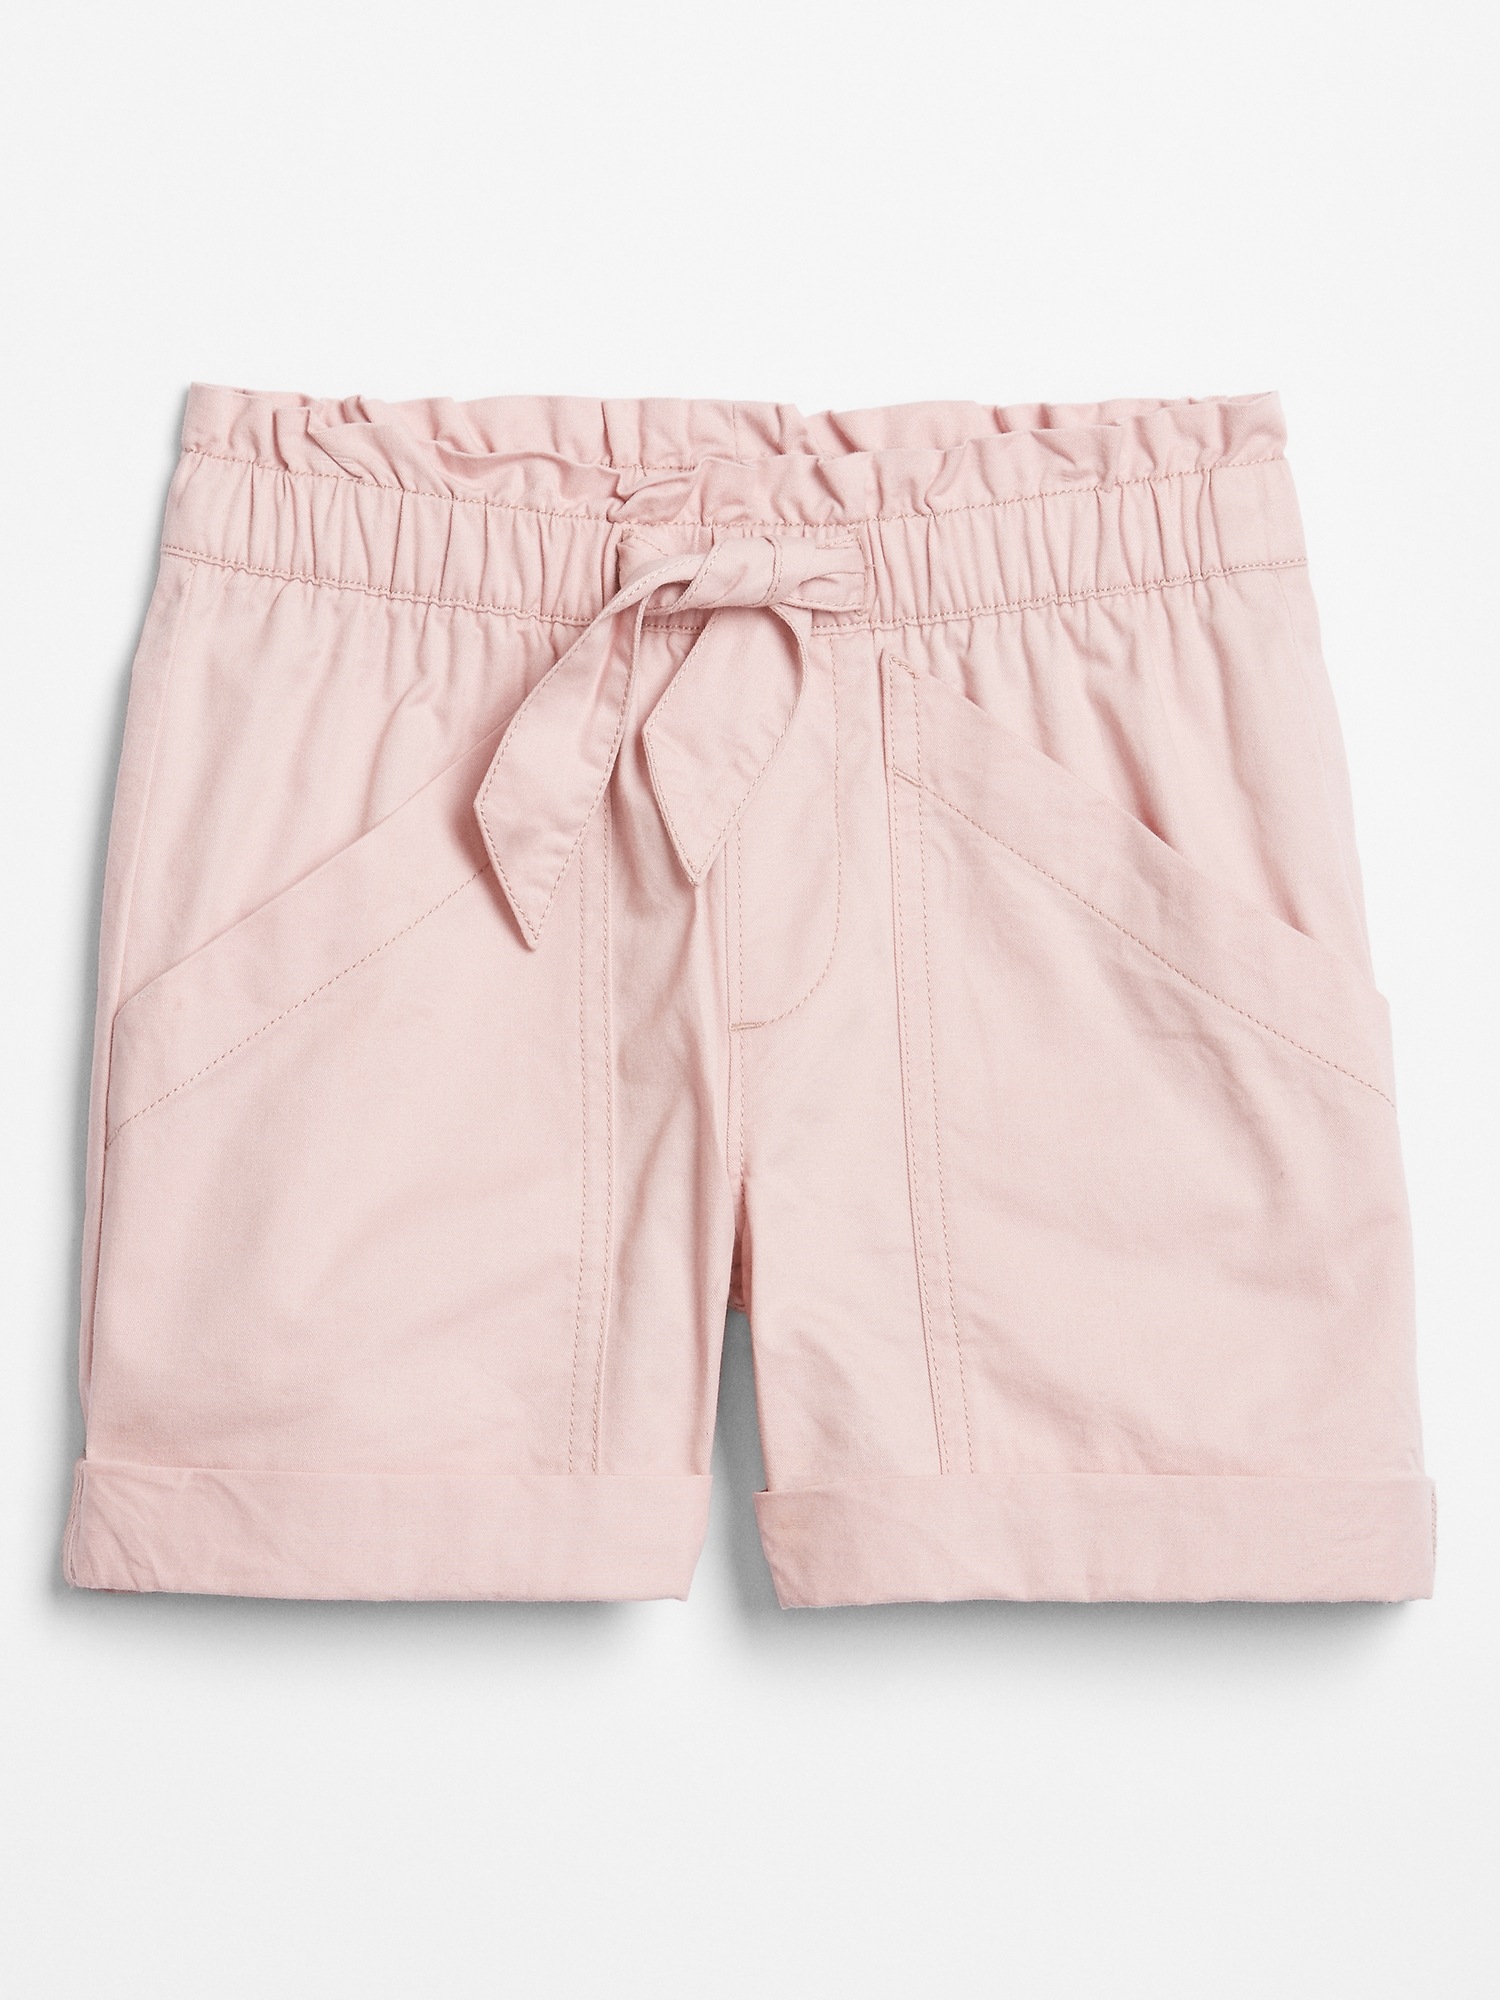 gap factory bermuda shorts